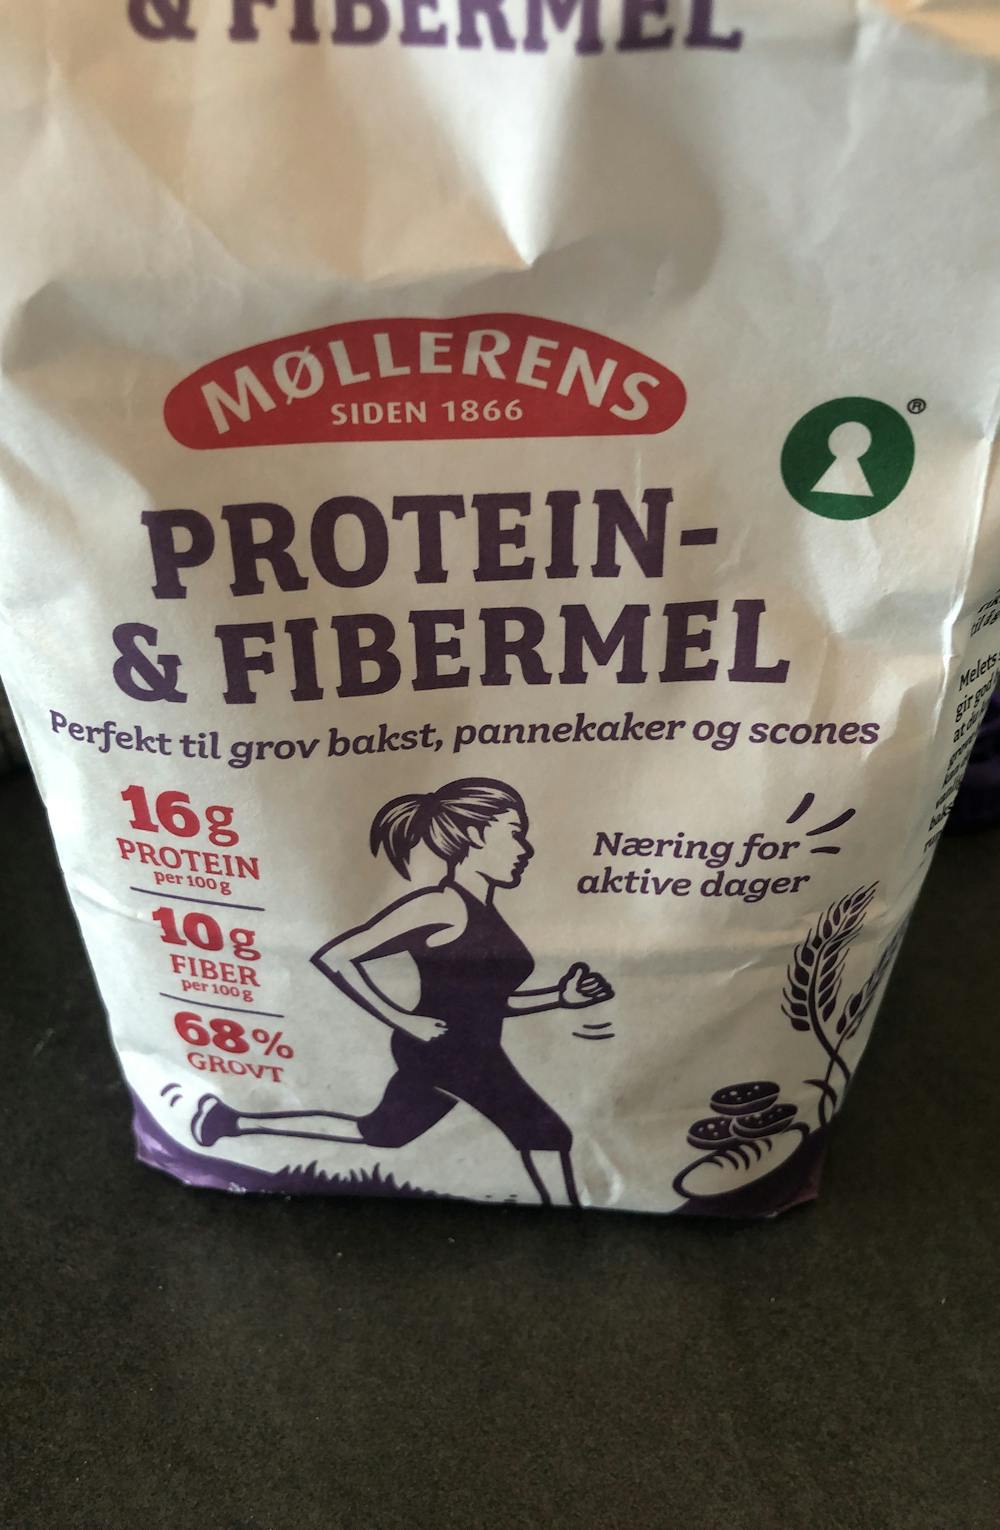 Protein- & fibermel, Møllerens